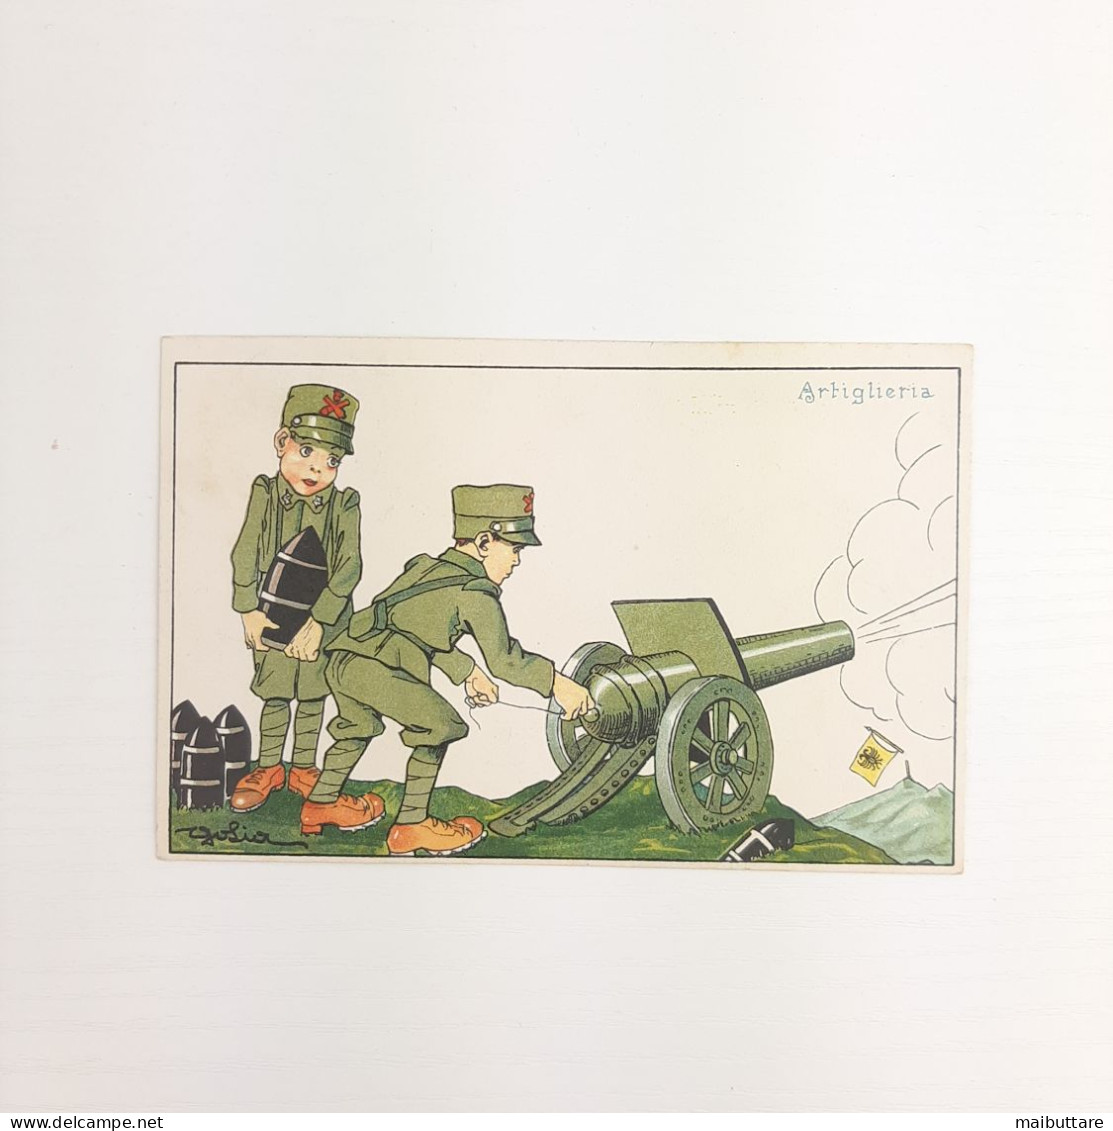 WW1 Cartolina A Colori - Illustrazione Satirica "Artiglieria" - Autore Golia Viaggiata Data 15.01.1916 Lanciatorpedini - War 1914-18